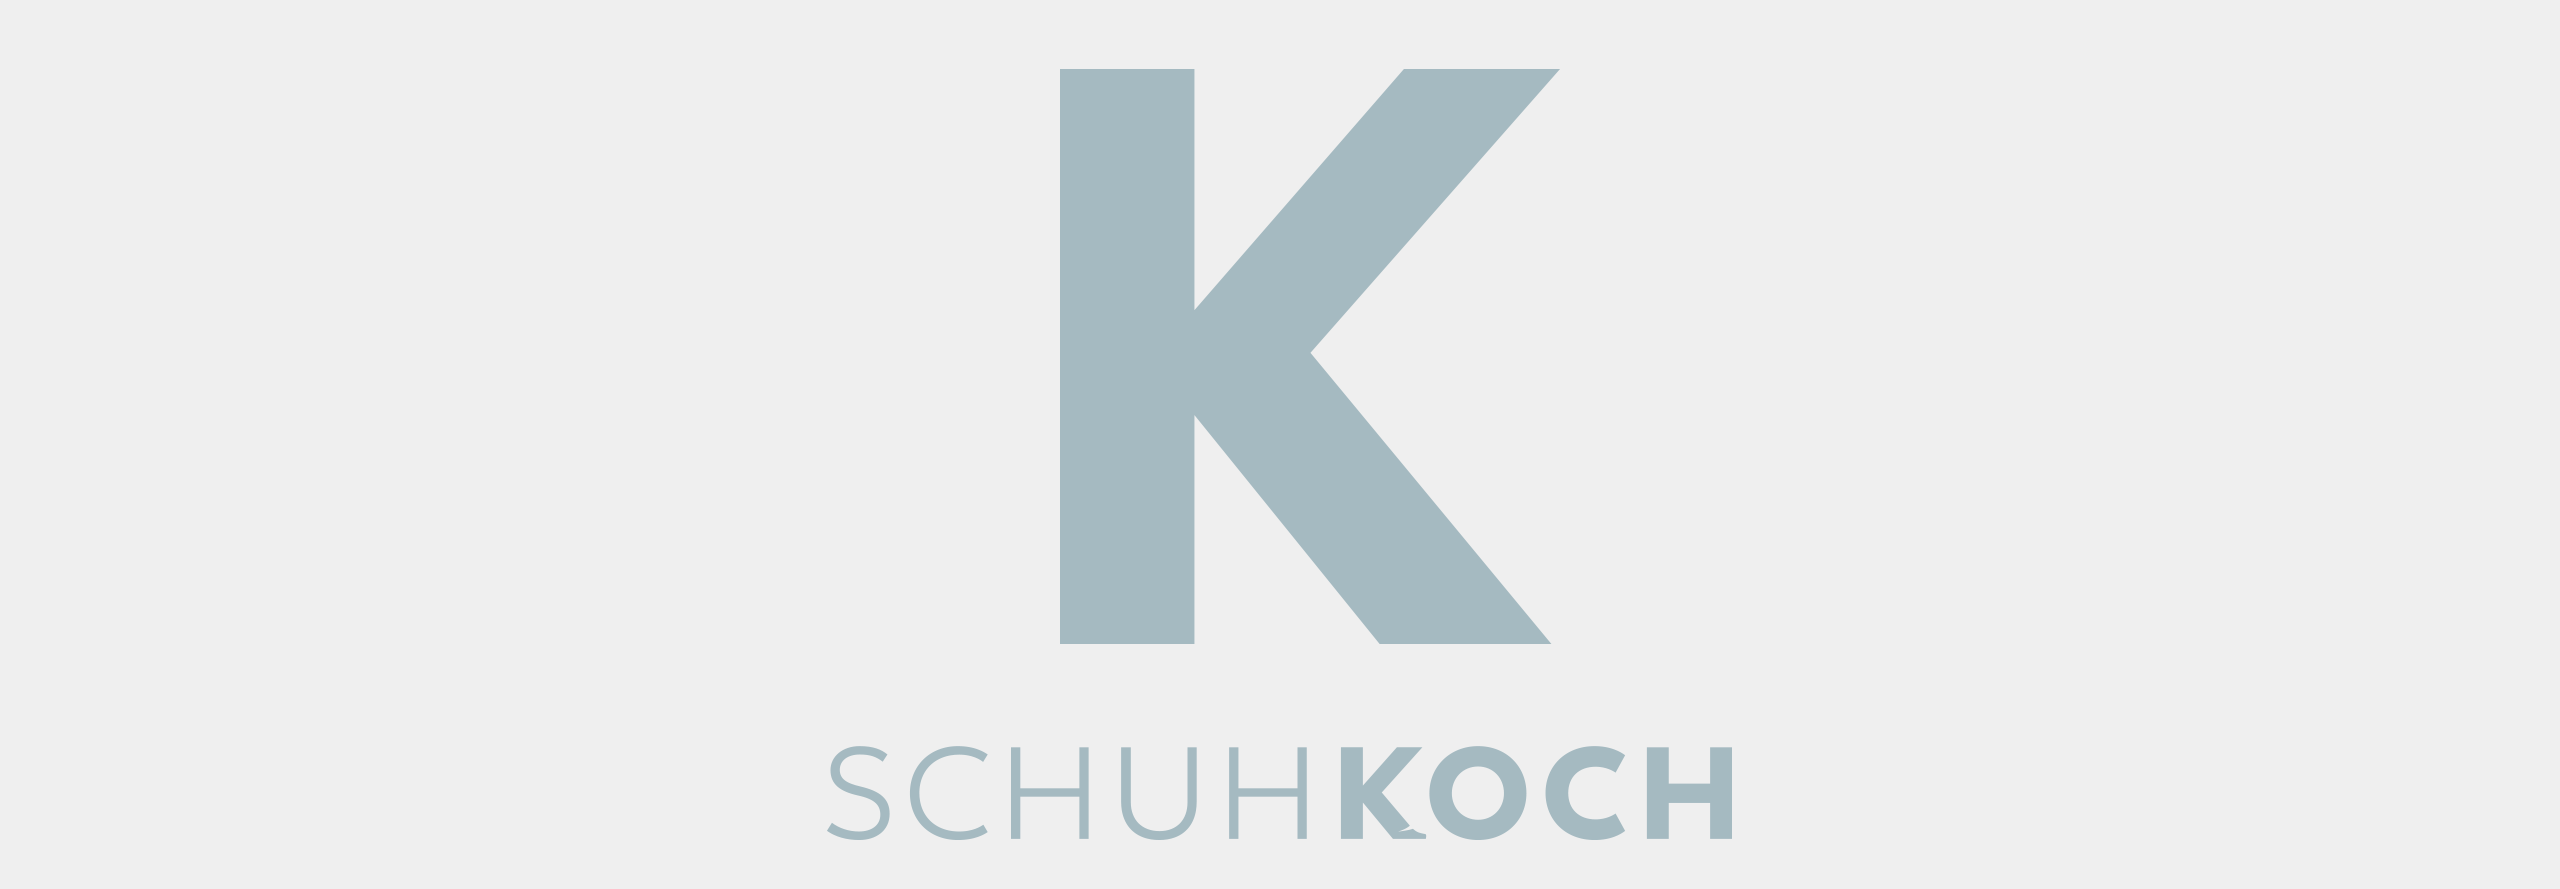 schuh koch logo